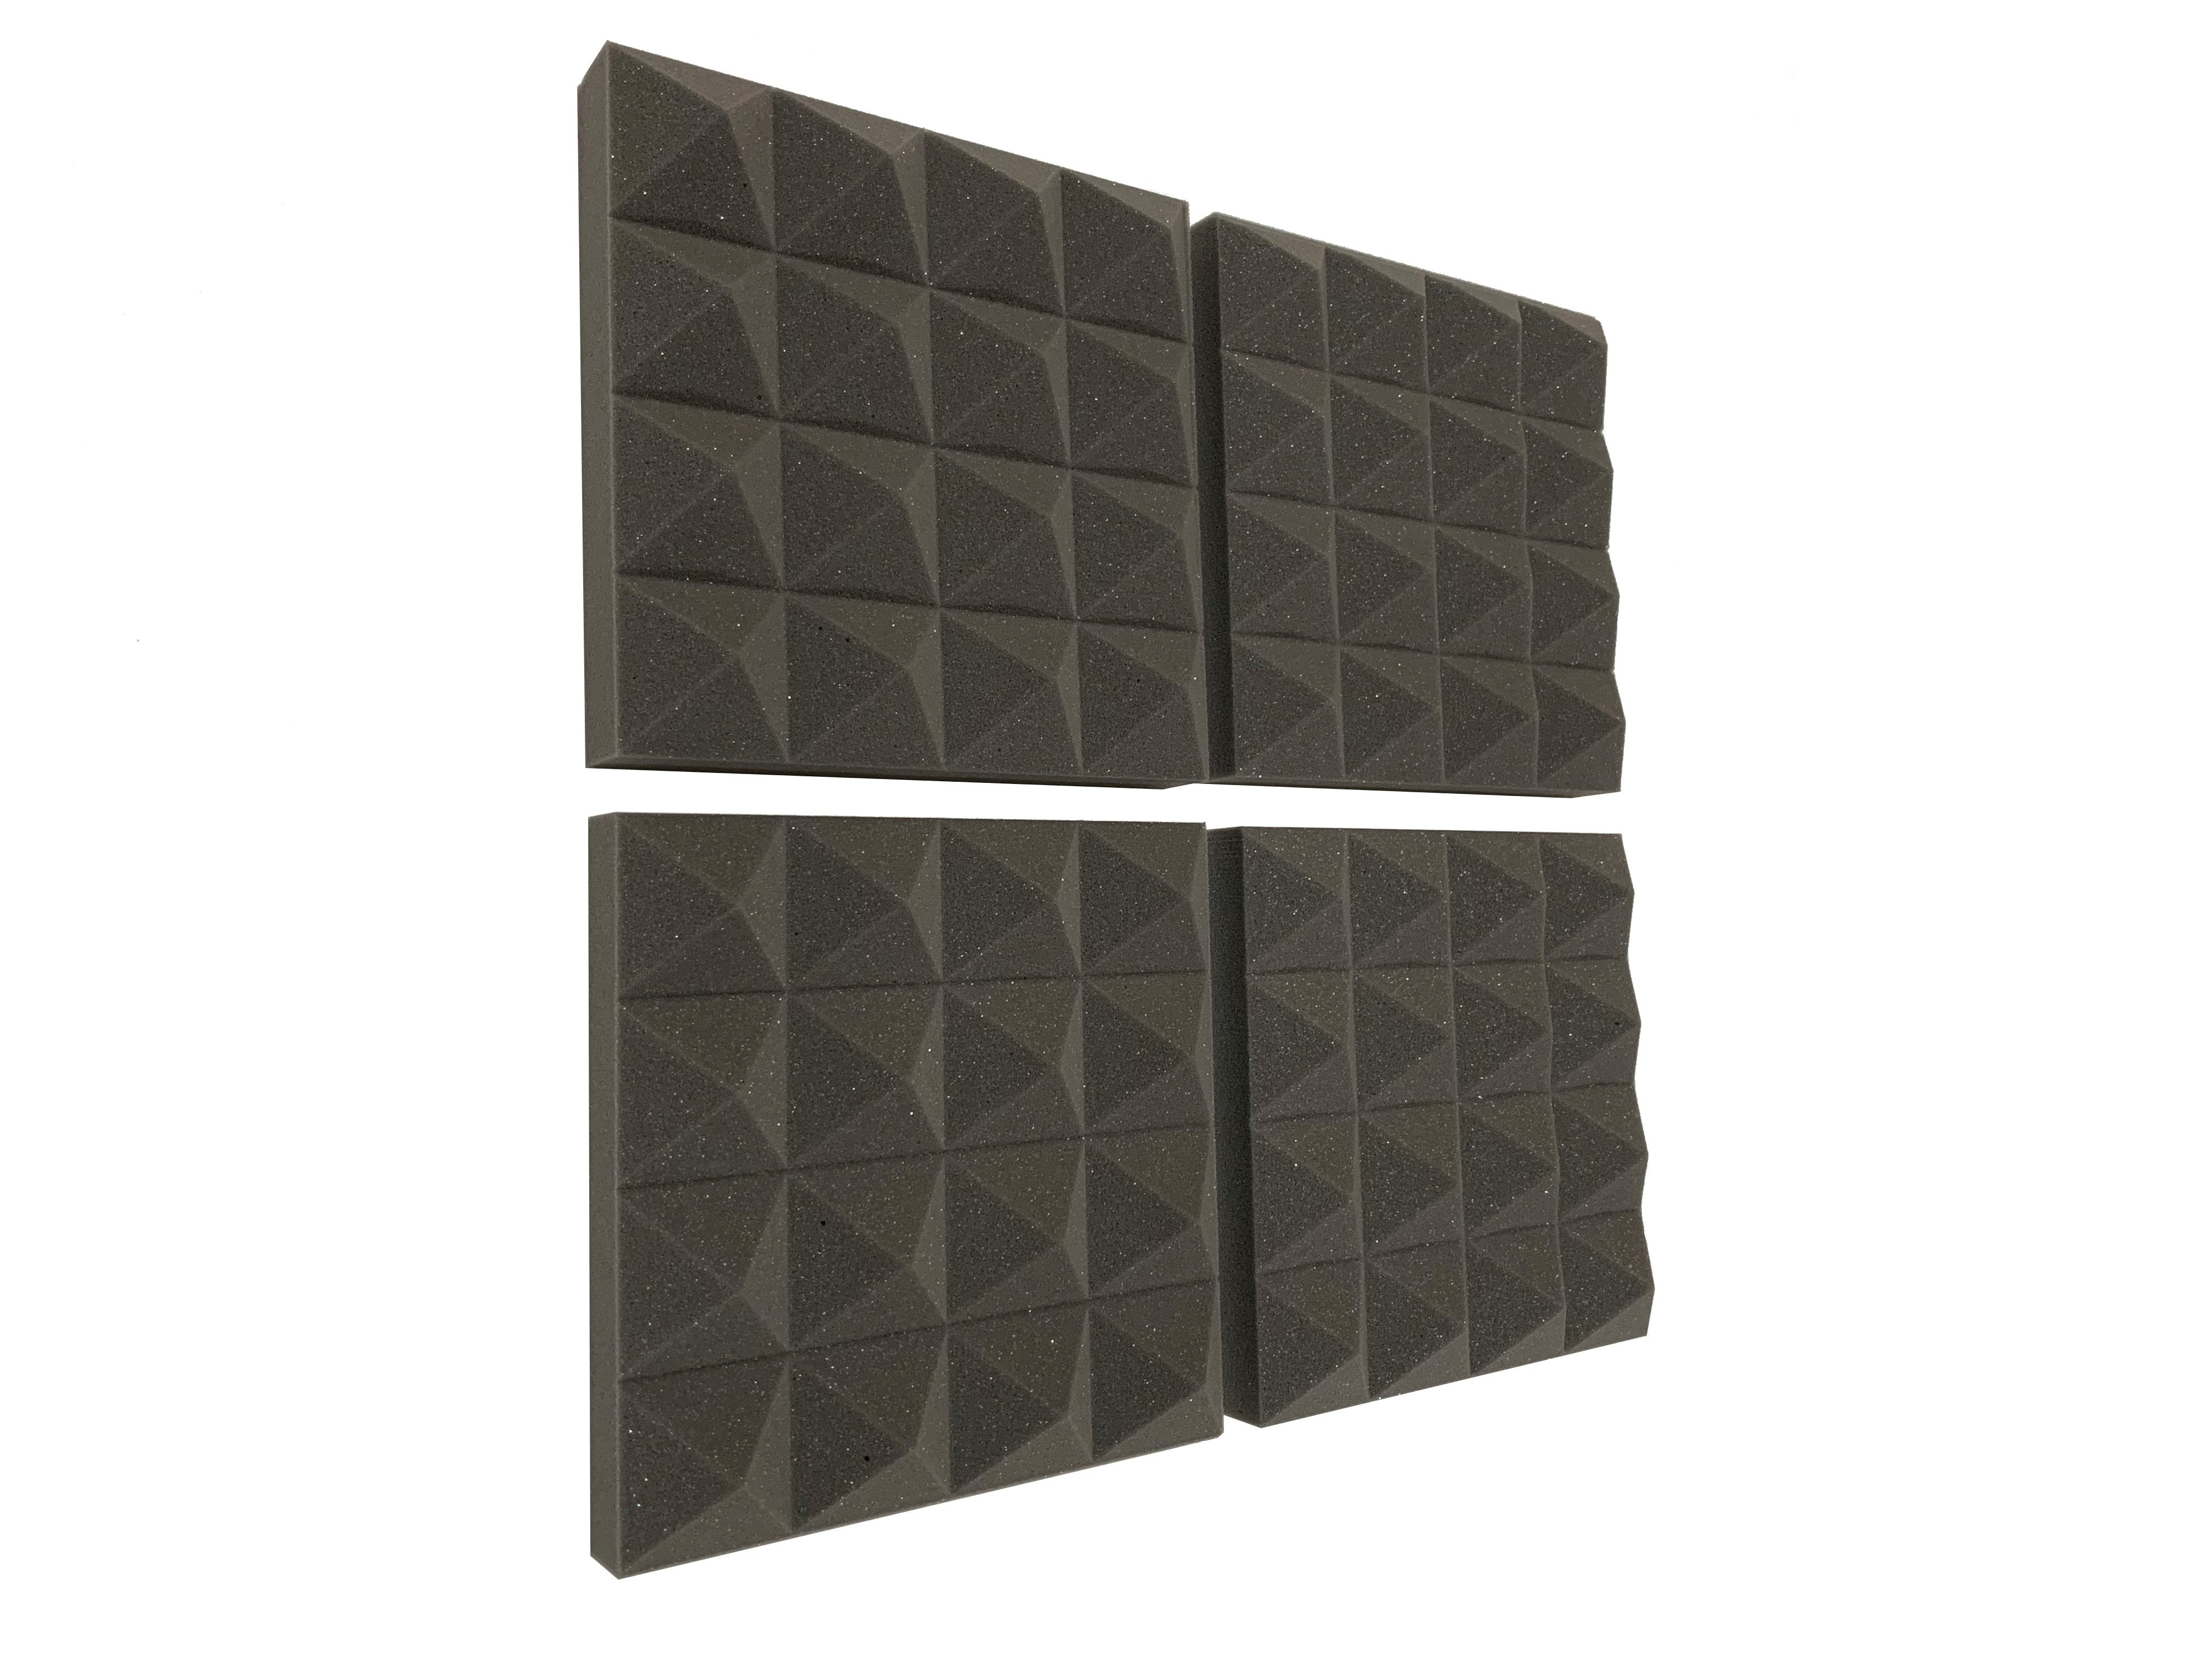 Pyramid PRO 12" Acoustic Studio Foam Tile Pack - Advanced Acoustics